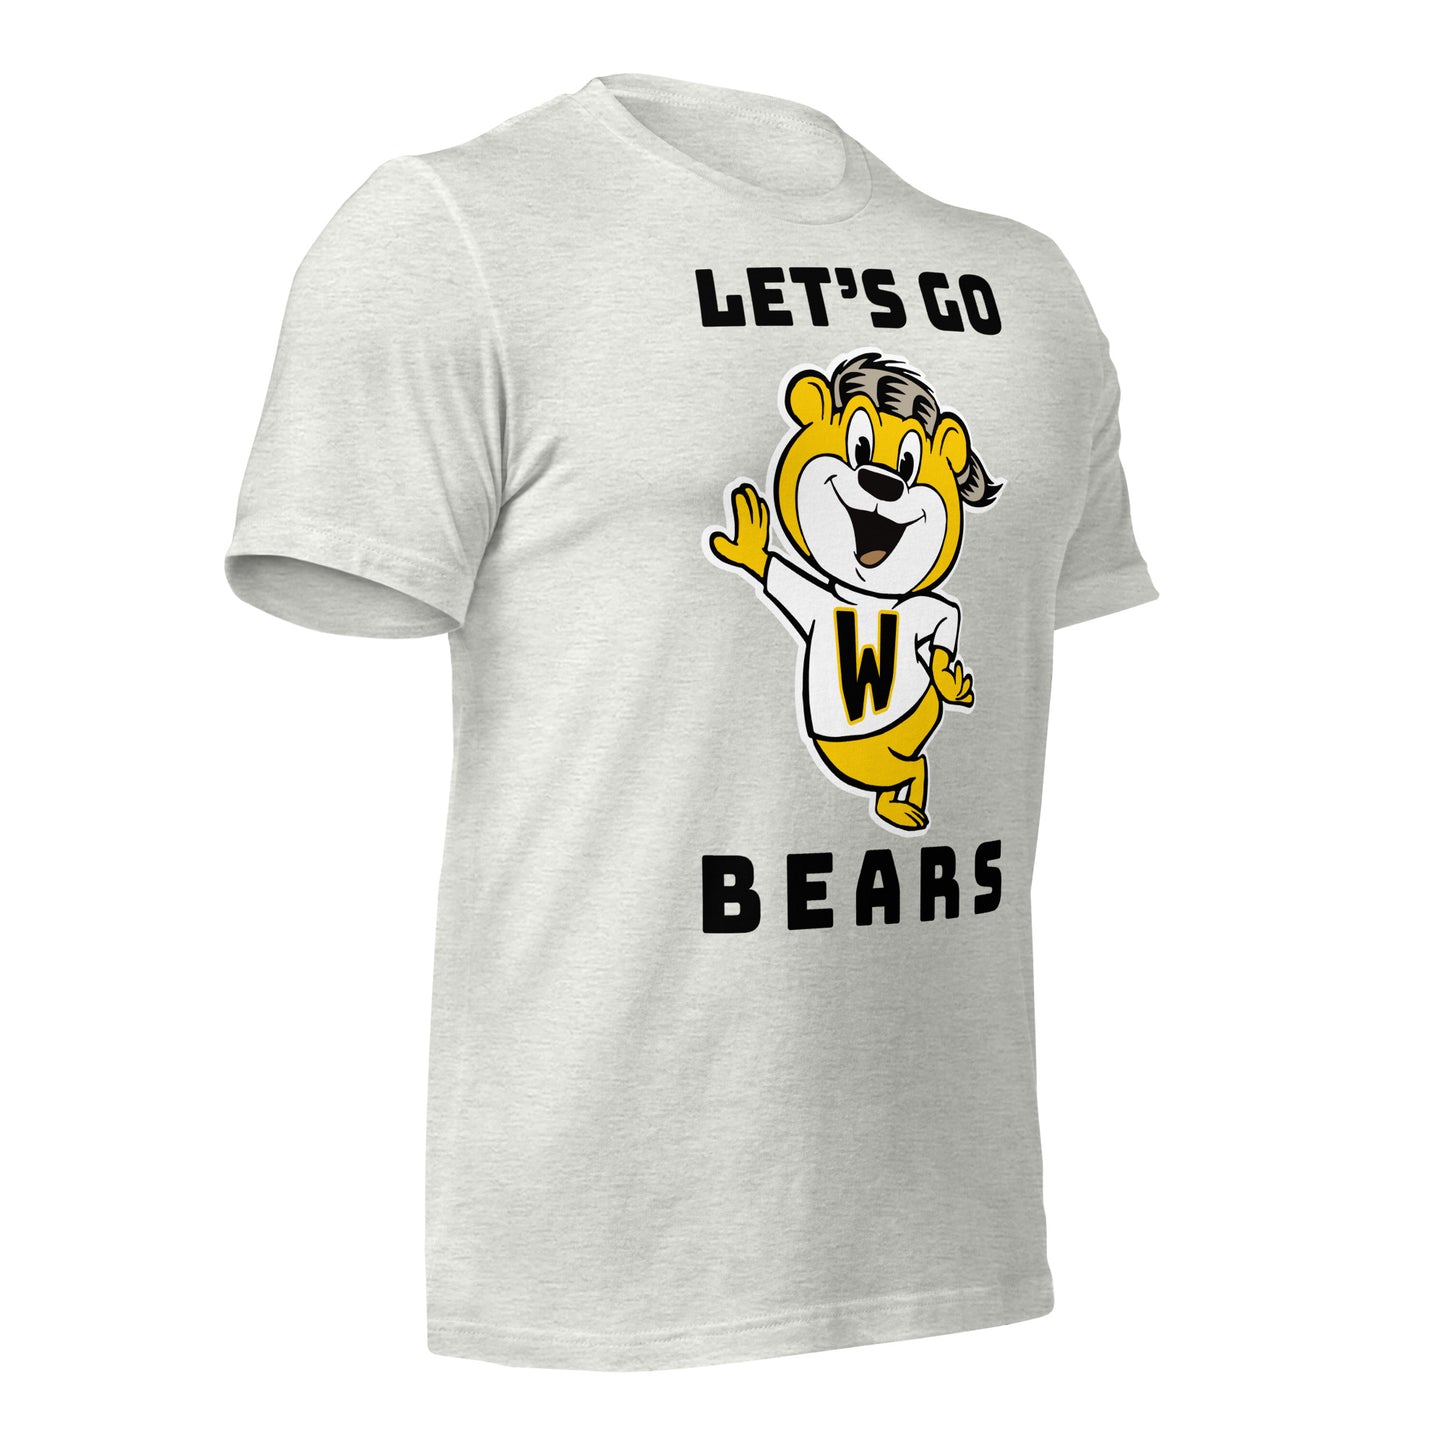 LET'S GO BEARS - BLACK FONT - BELLA+CANVAS - Unisex t-shirt